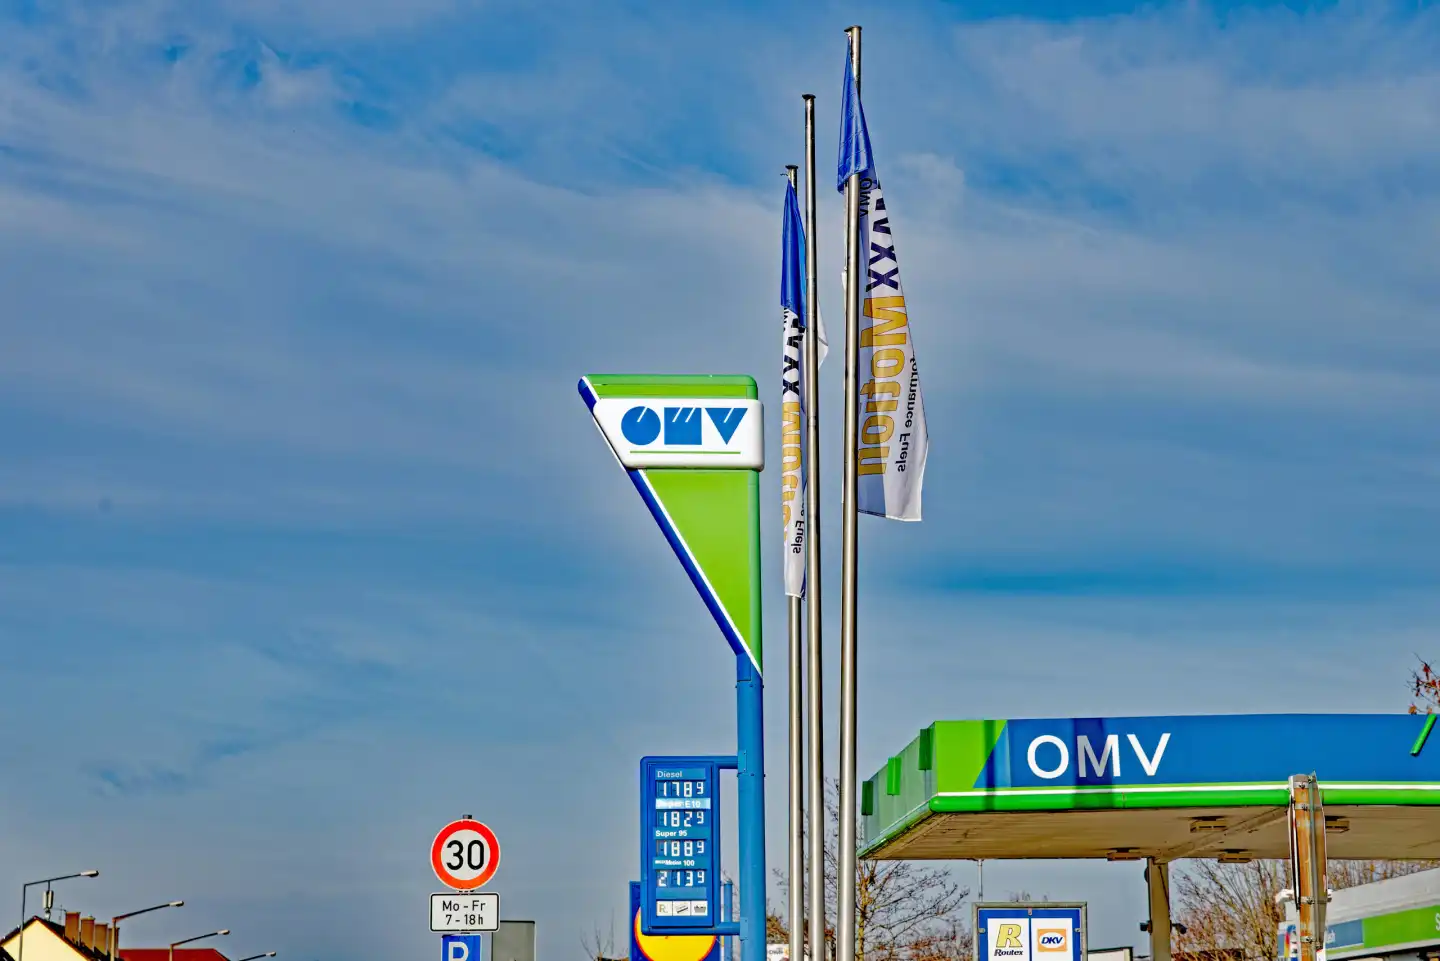 Tankstelle: Pylon mit dem Symbol des Mineralölkonzerns ÖMV